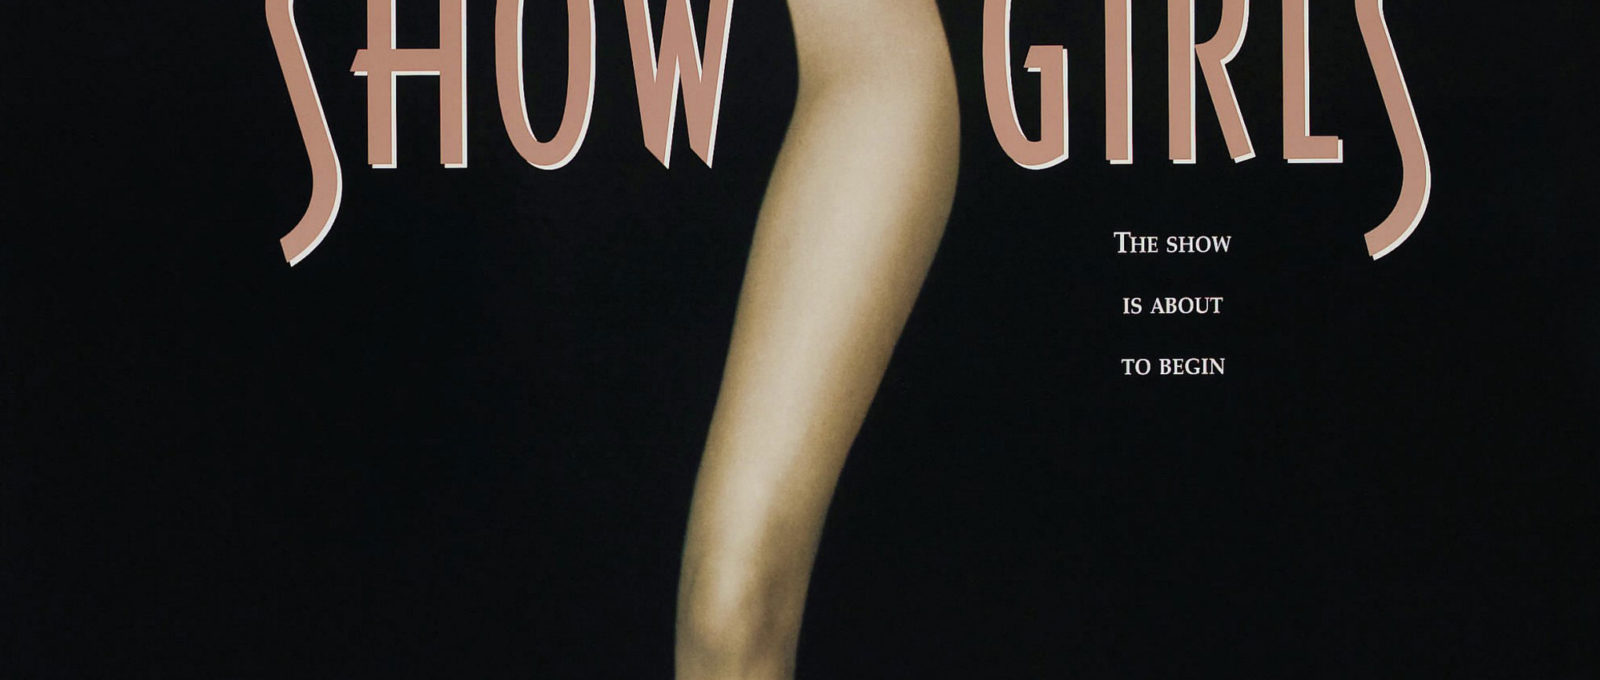 Showgirls movie poster